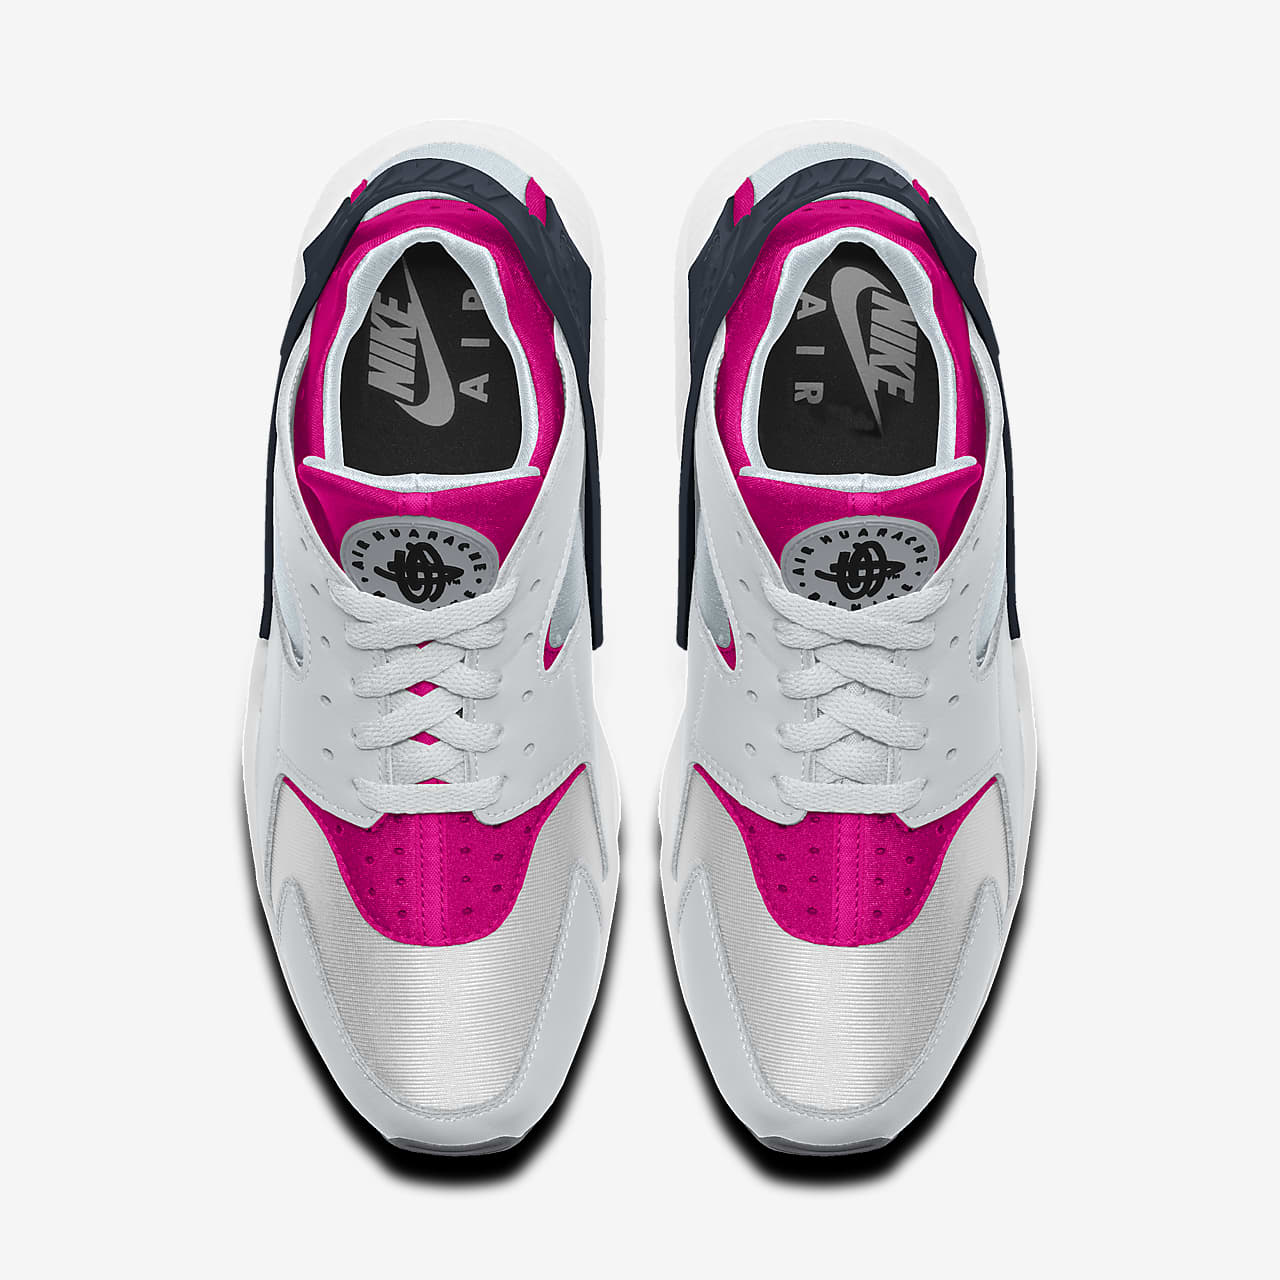 Nike Air Huarache You Zapatillas personalizadas - Mujer.